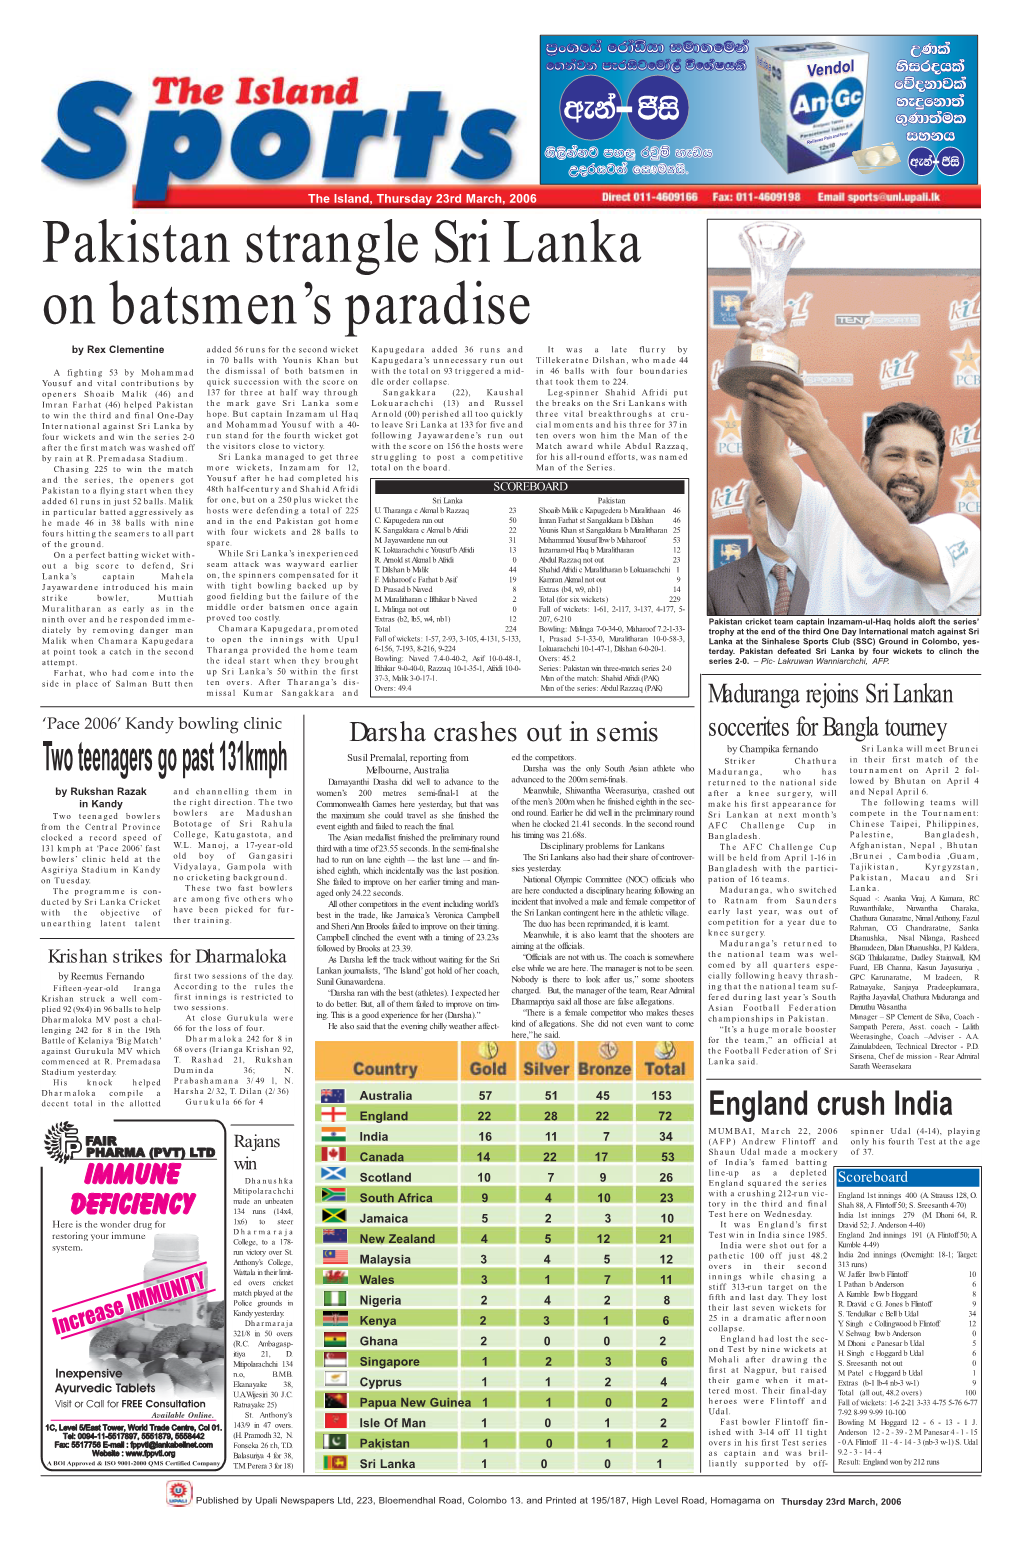 Pakistan Strangle Sri Lanka on Batsmen's Paradise